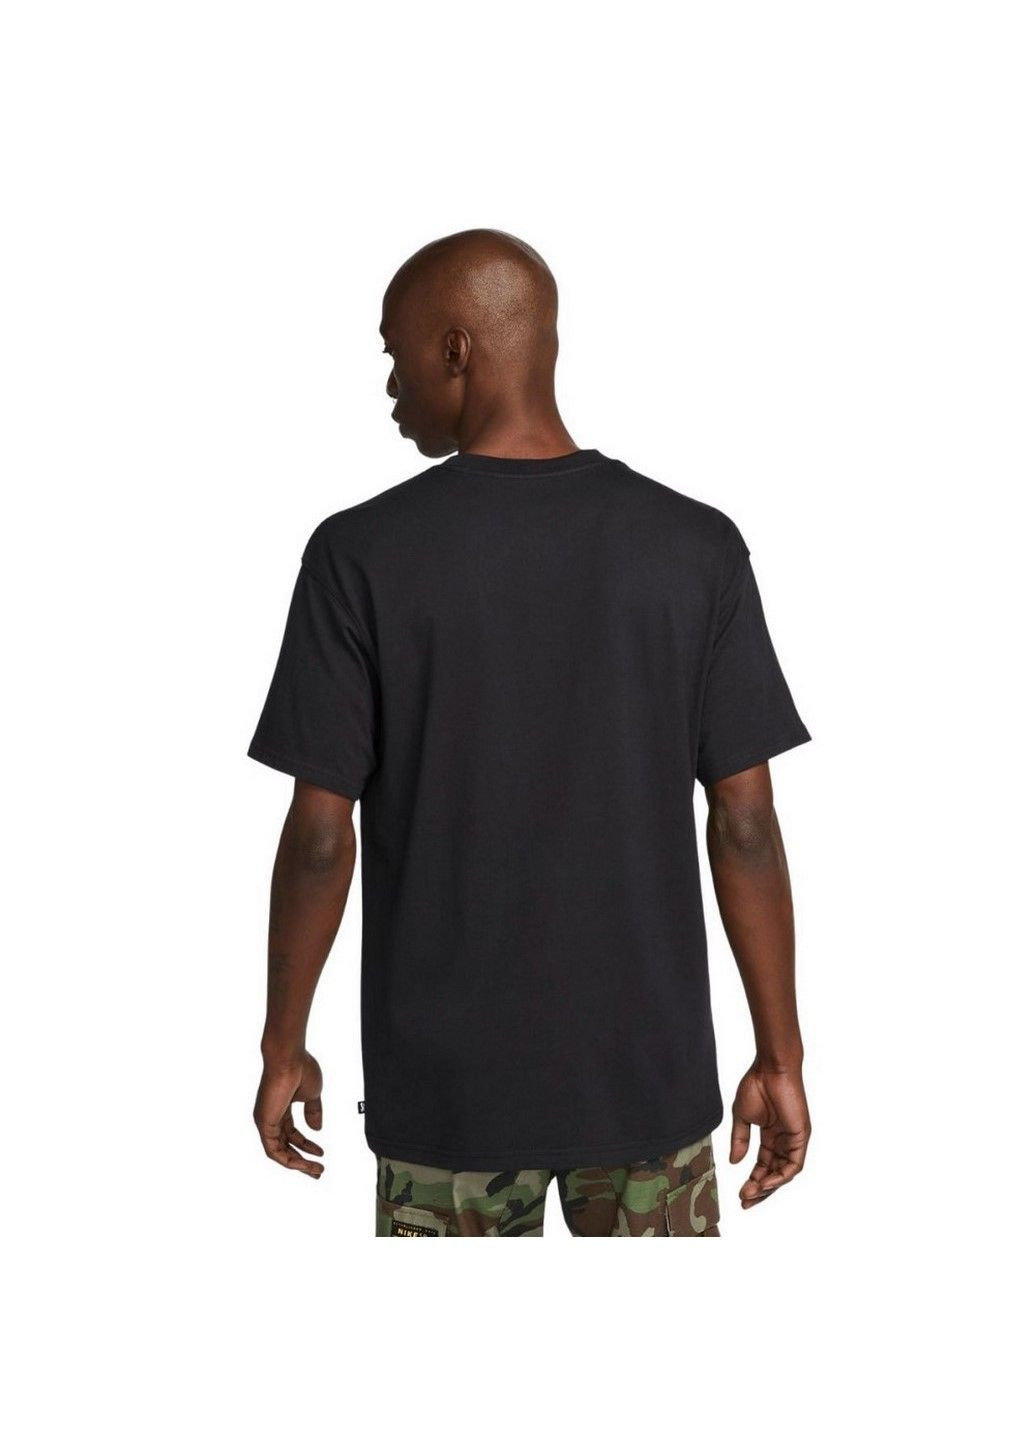 Черная футболка m nk sb tee essentials db9975-010 Nike